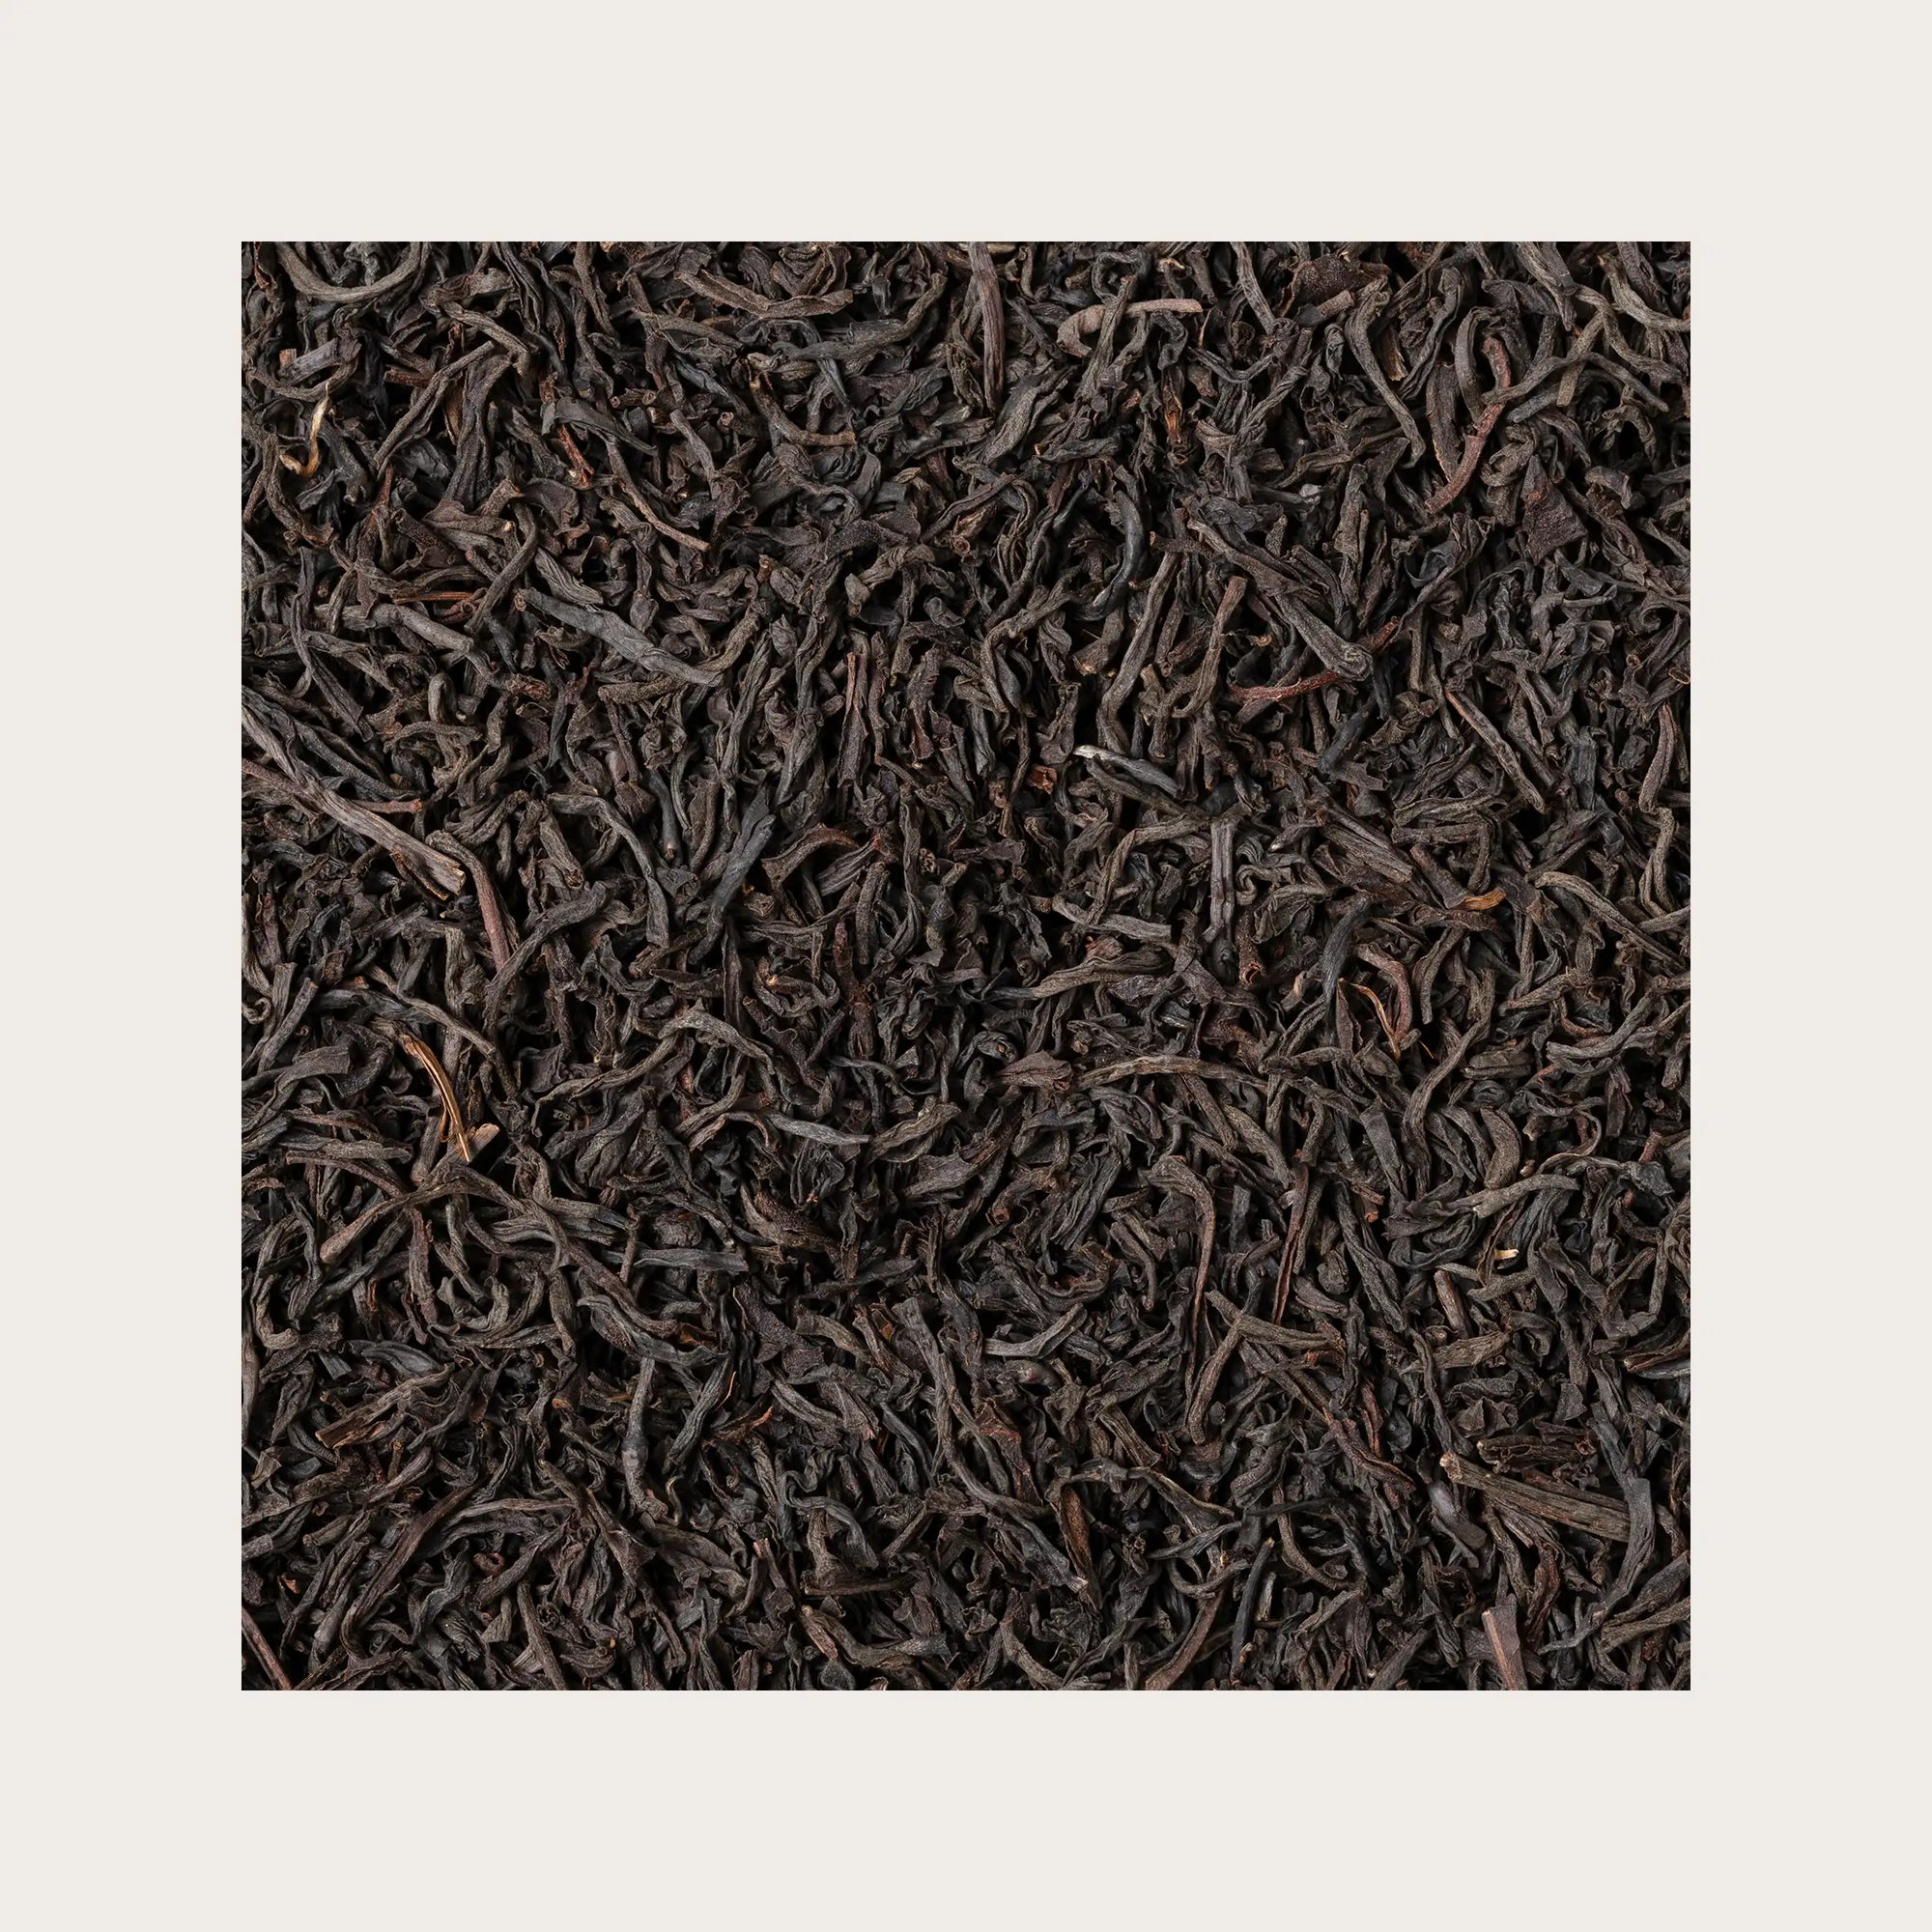 Tè Ceylon